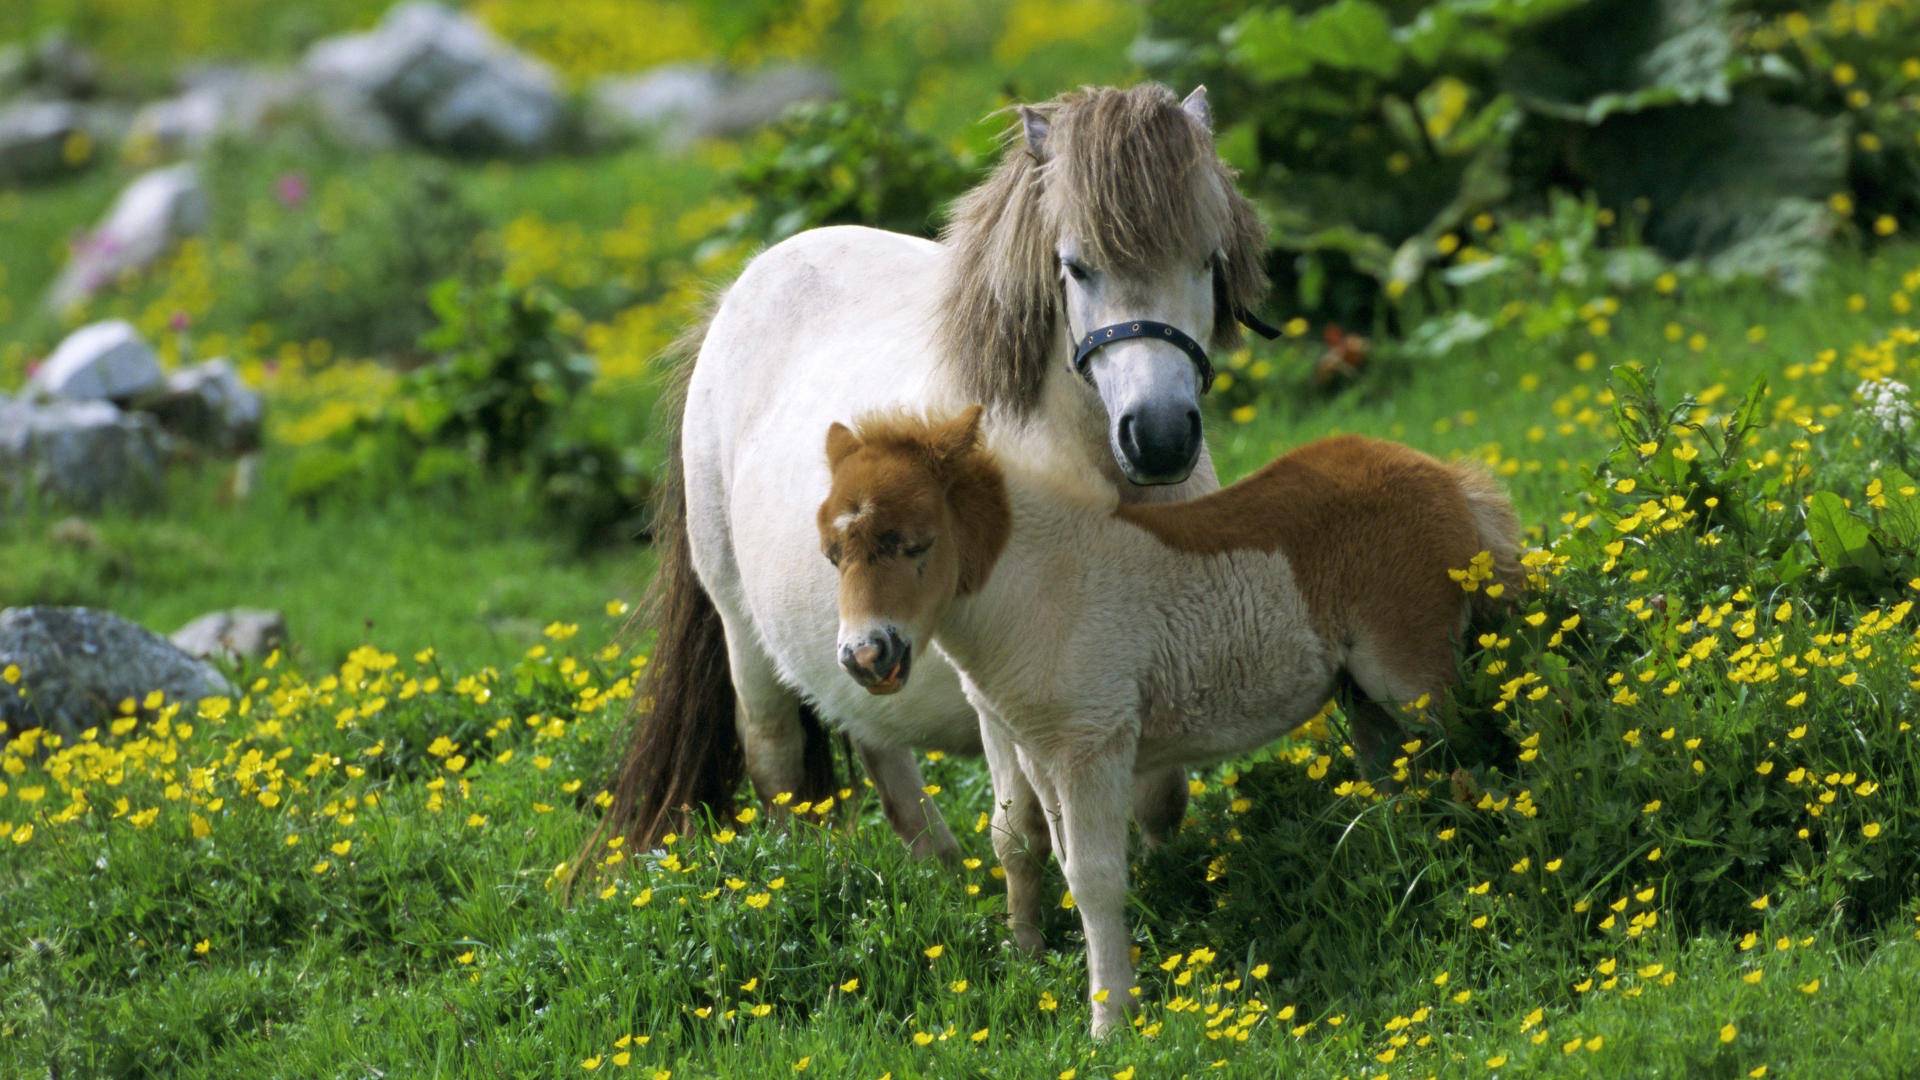 Cute Horse Cub